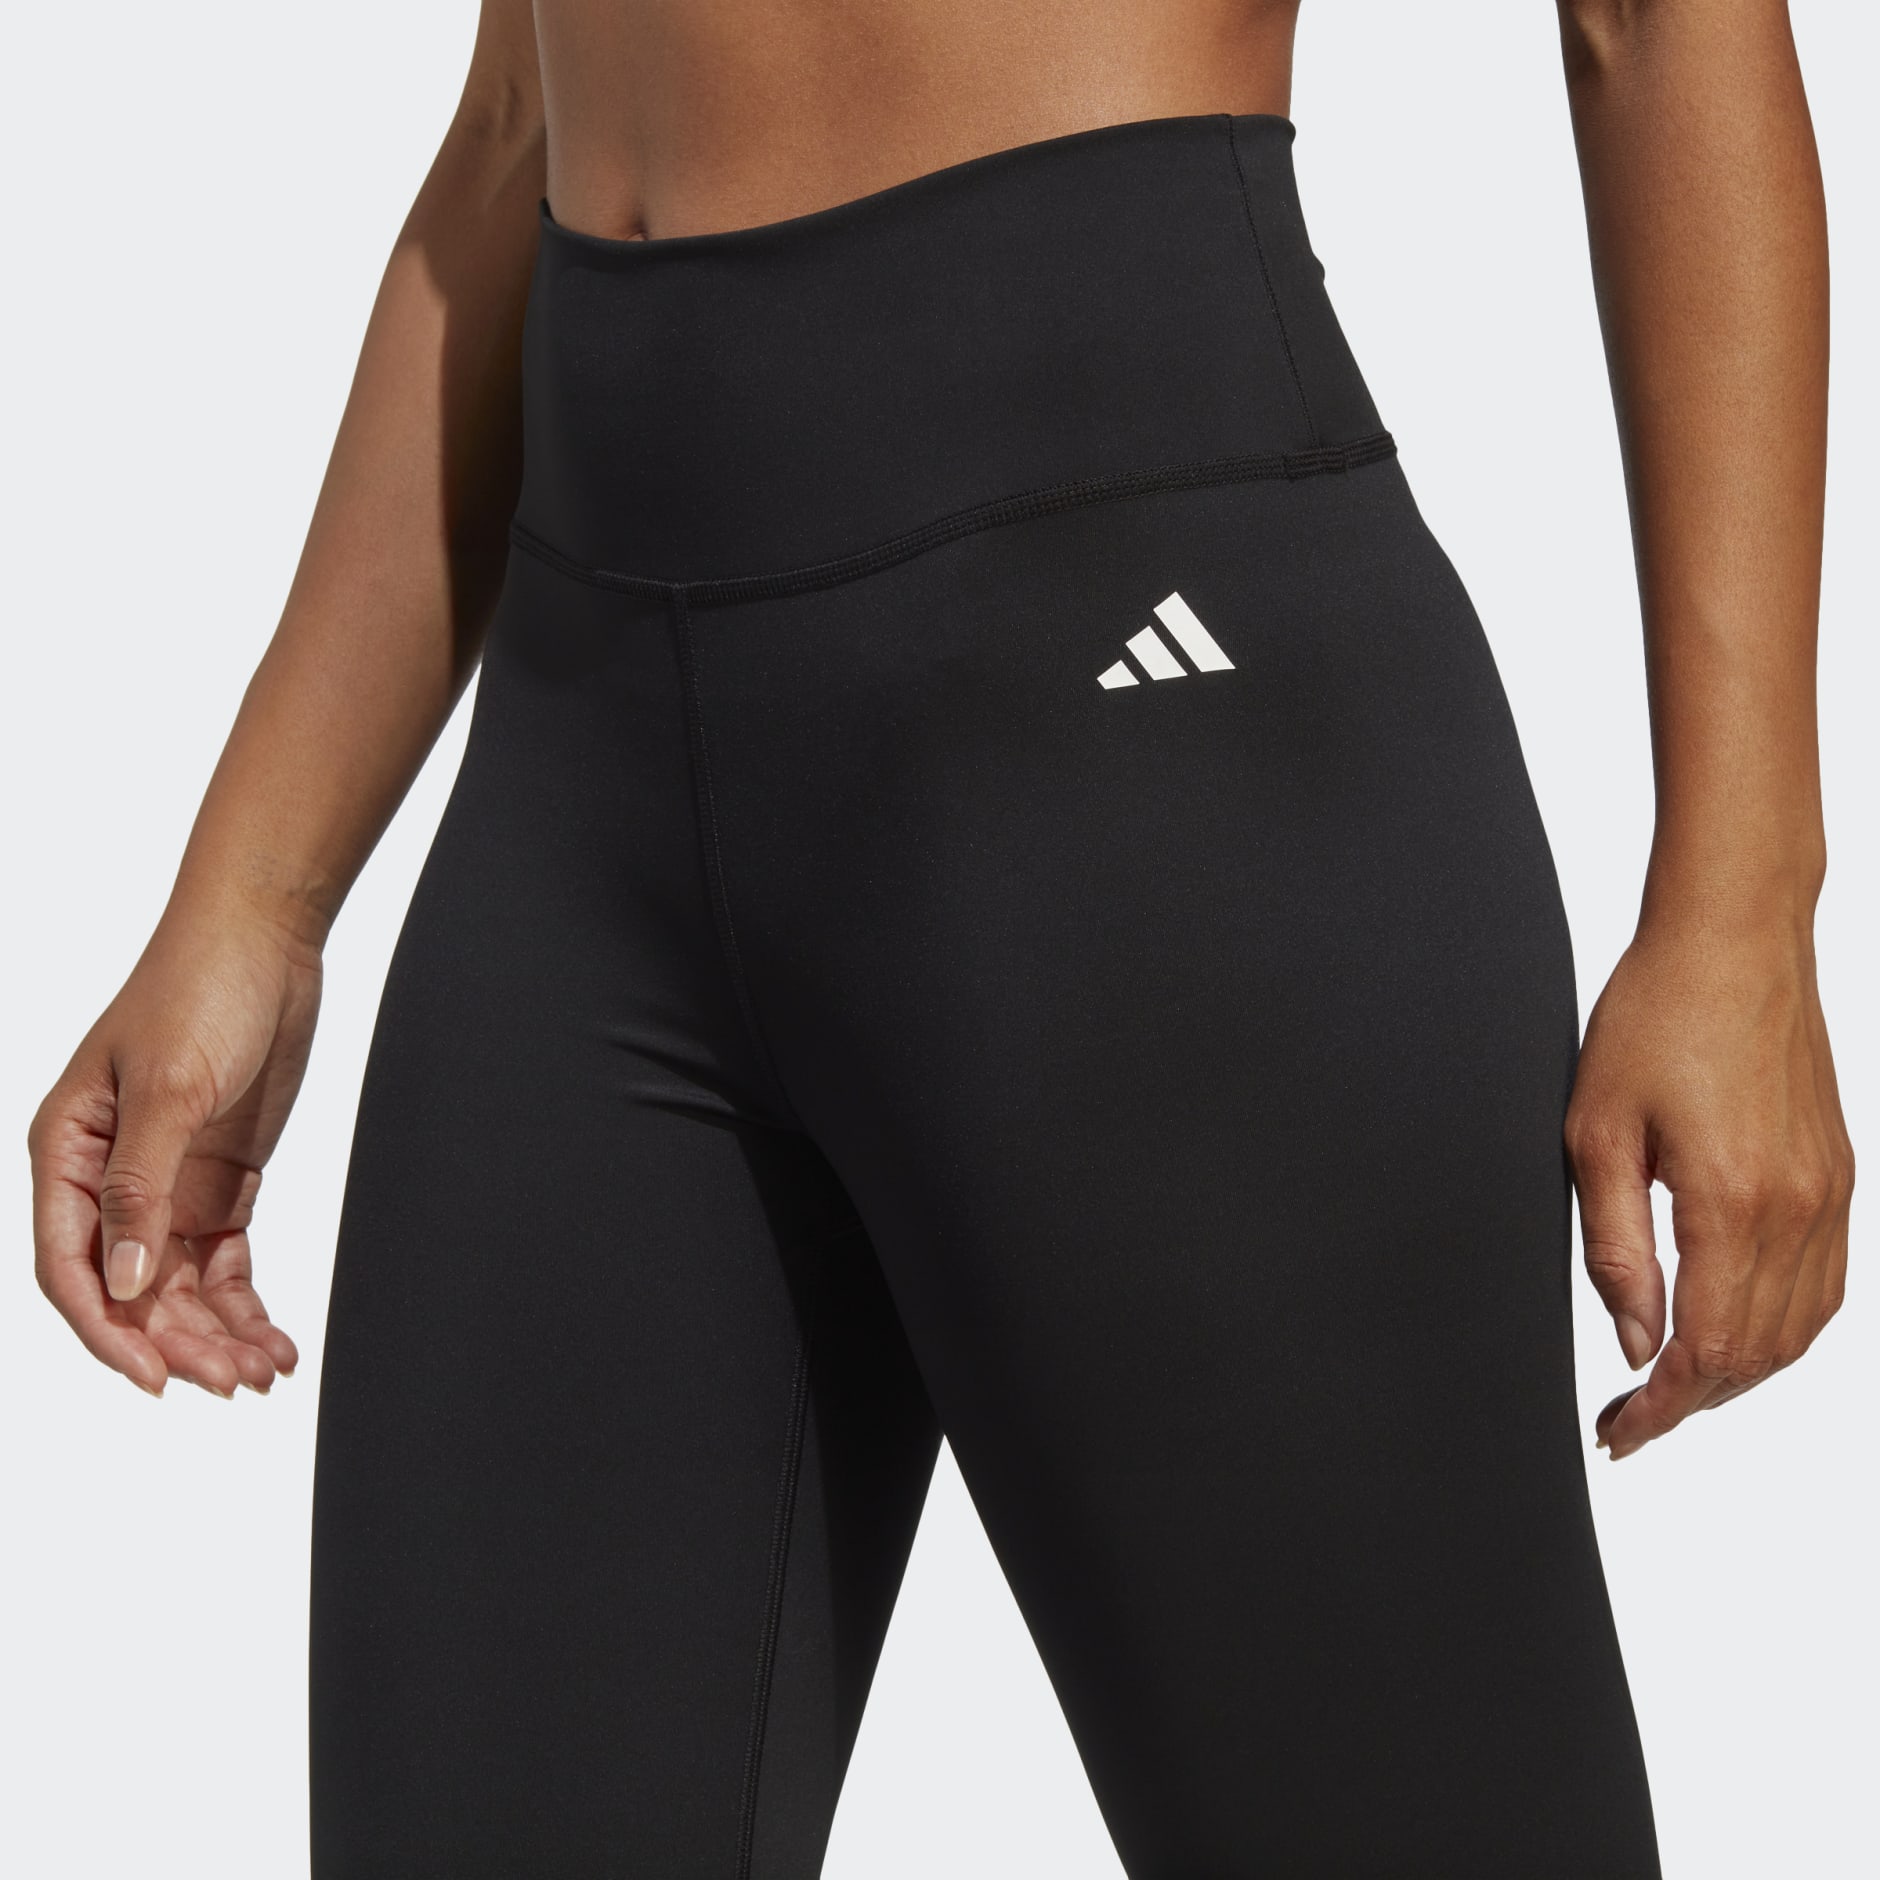 Buy Adidas women sportswear fit training 7 8 leggings red Online